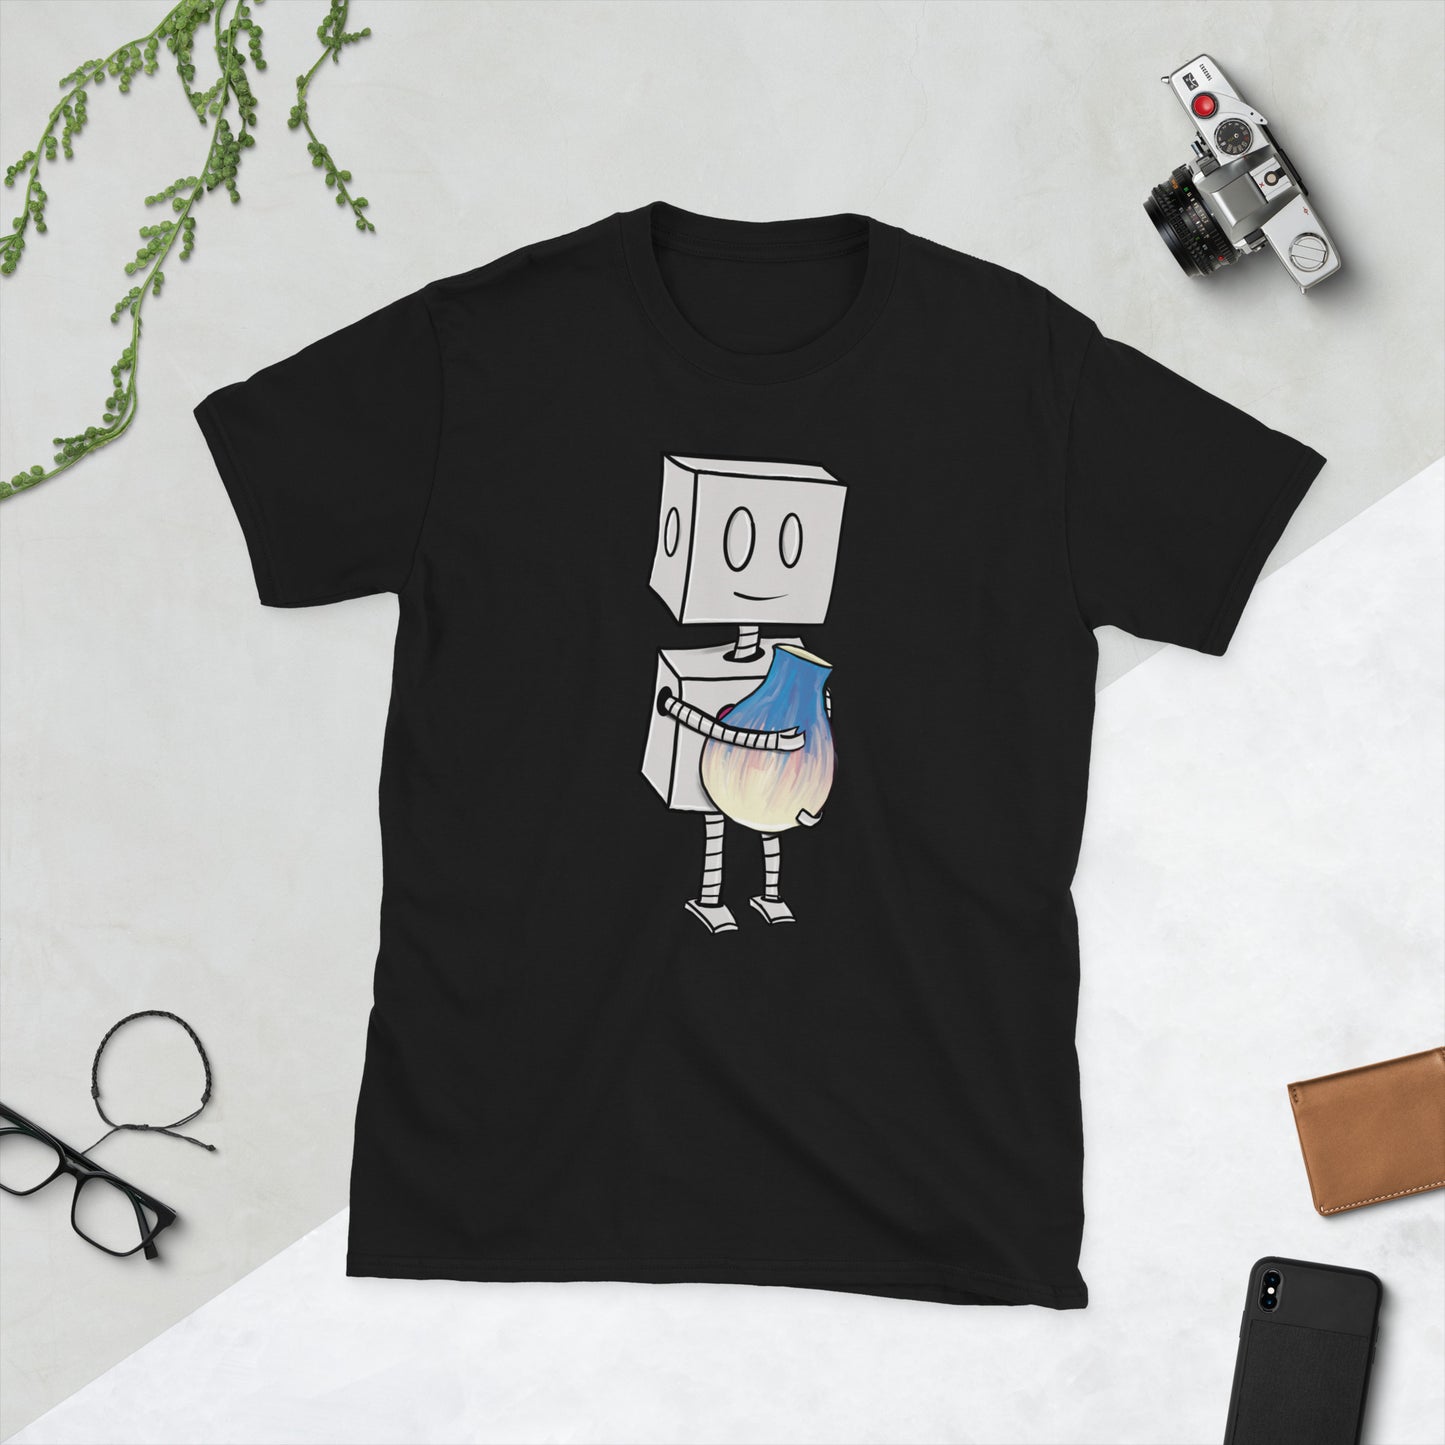 "Adorable Robot" Premium T-Shirt (Robot & Pottery Version) - Unisex